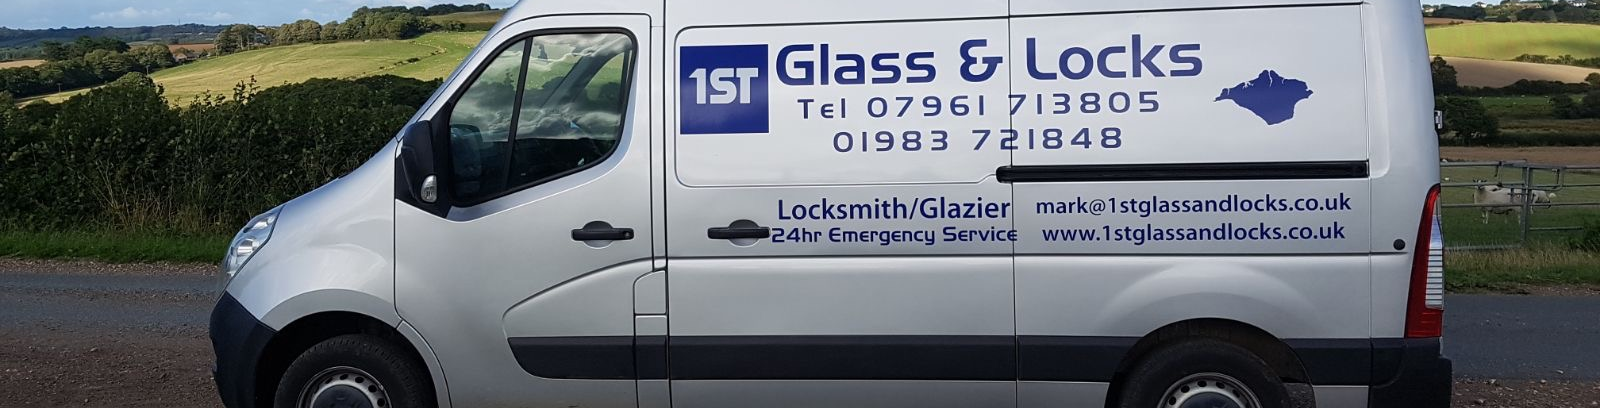 1st Glass Locks 24hr Emergency Locksmith & Glazier on The Isle of Wight